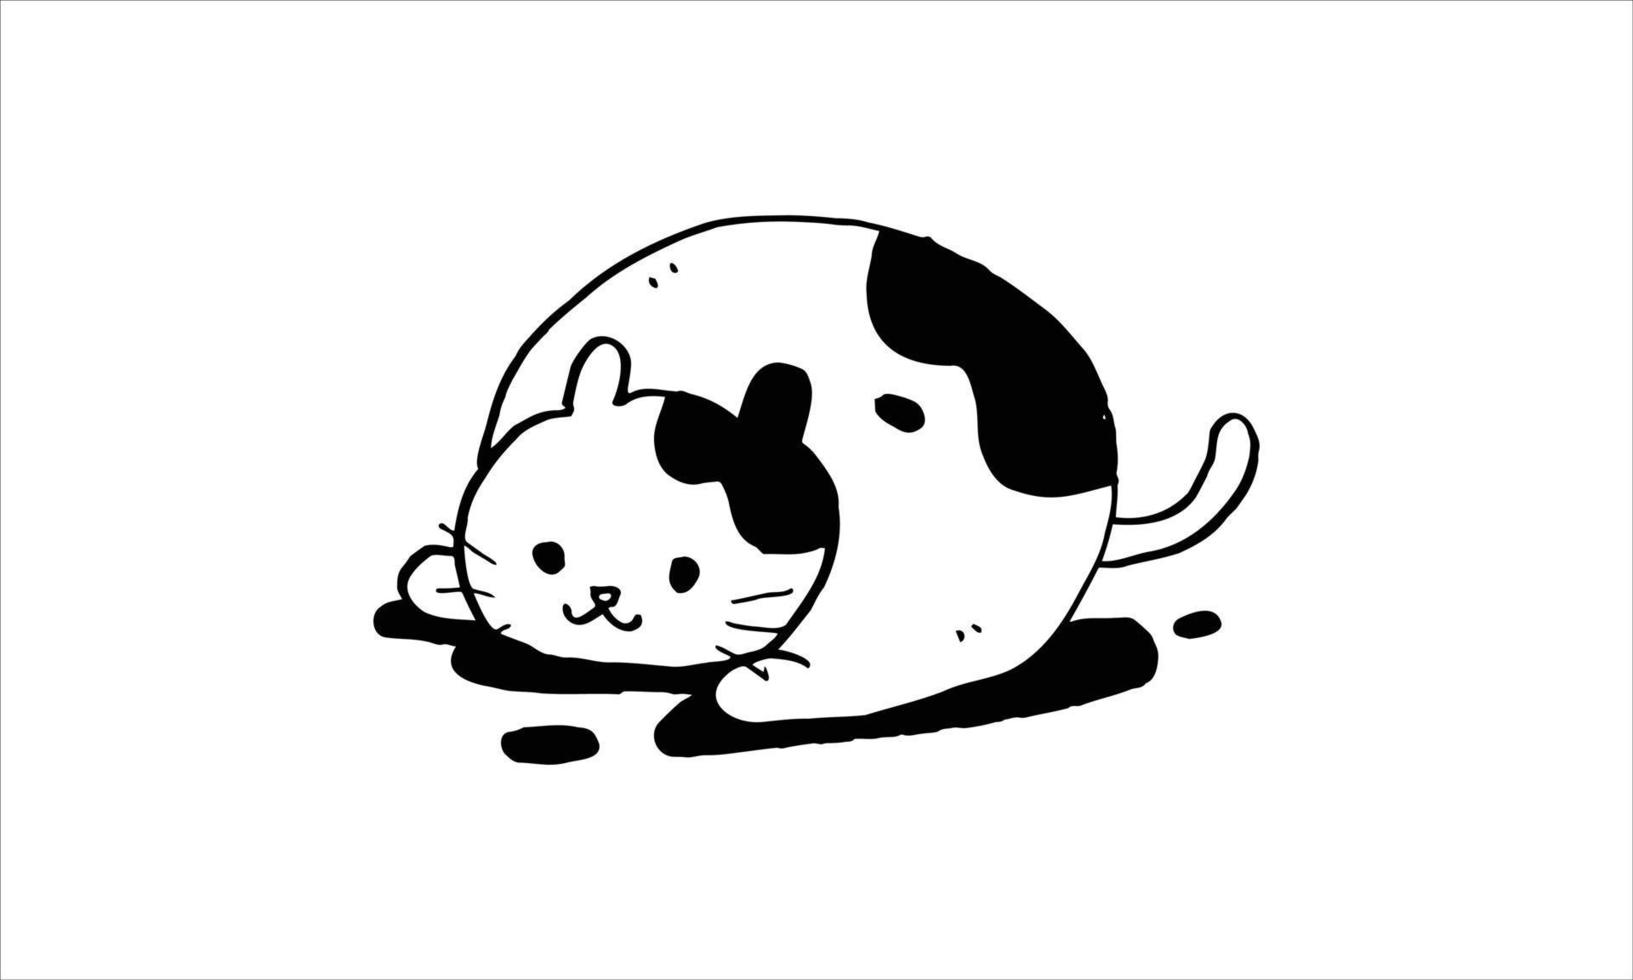 lindo gato preguiçoso com uma grande gordura corporal sonolento deitado no chão. ilustração de desenho animado de animal engraçado. doodle estilo de desenho de vetor de design de gatinho.